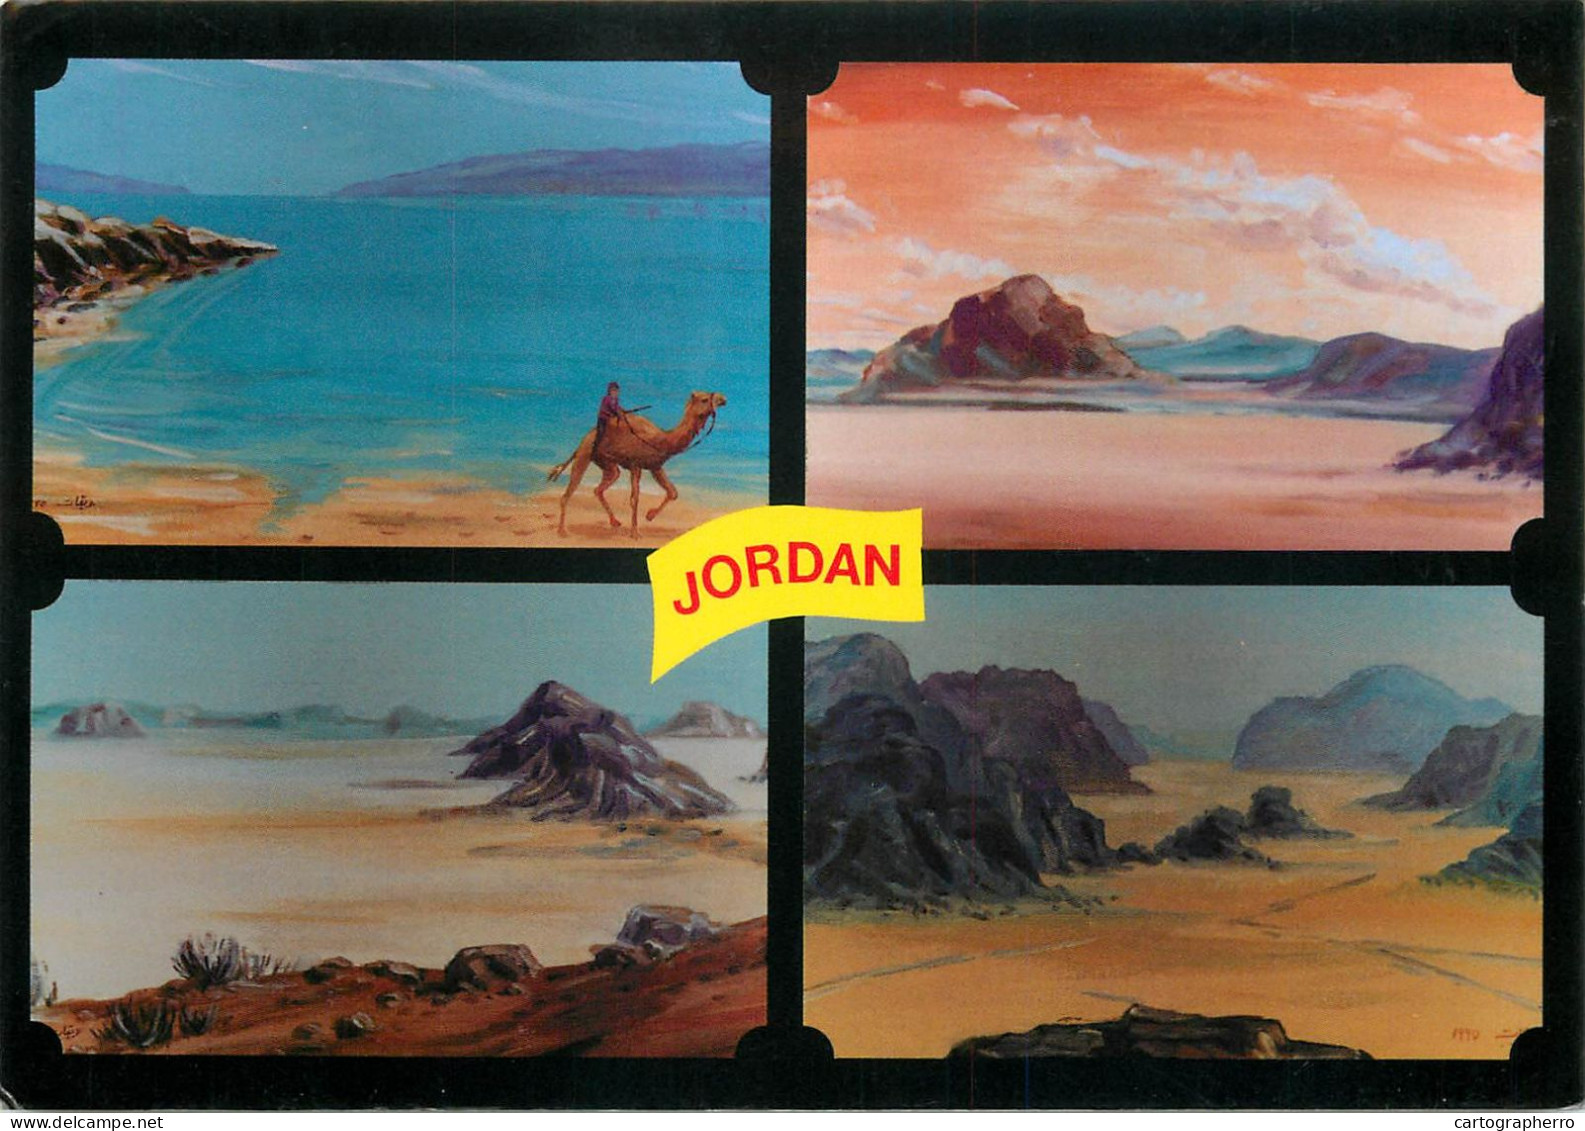 Jordan Multi View - Jordan